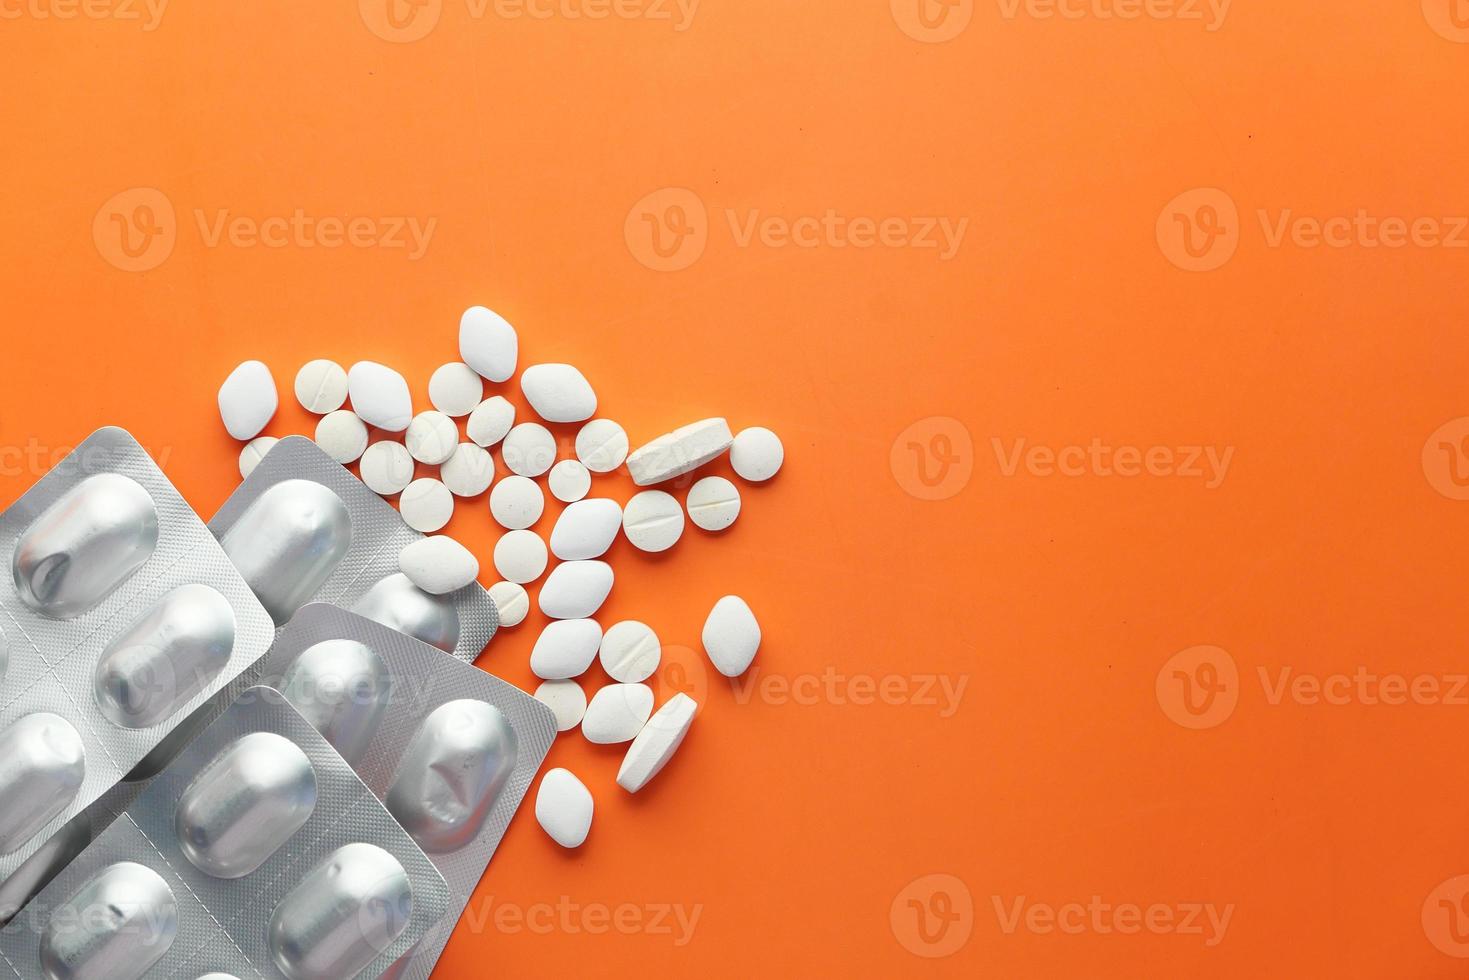 vita piller och blisterförpackning på orange bakgrund foto